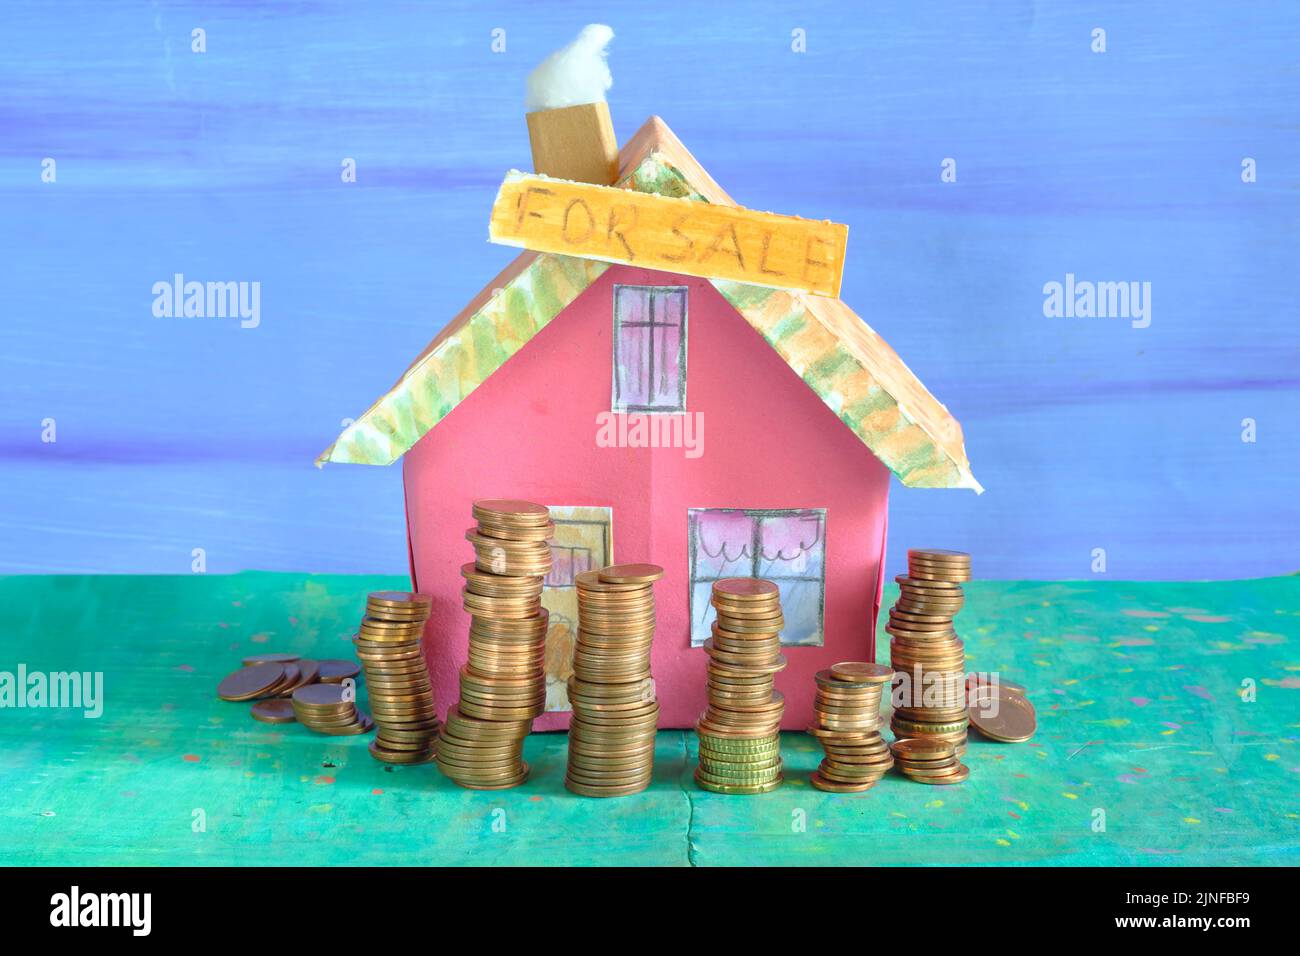 Kauf Haus, niedlichen Modell Haus mit gestapeltem Geld, Immobilien-Business-Immobilienmakler und steigende Preise für Häuser Konzept Stockfoto